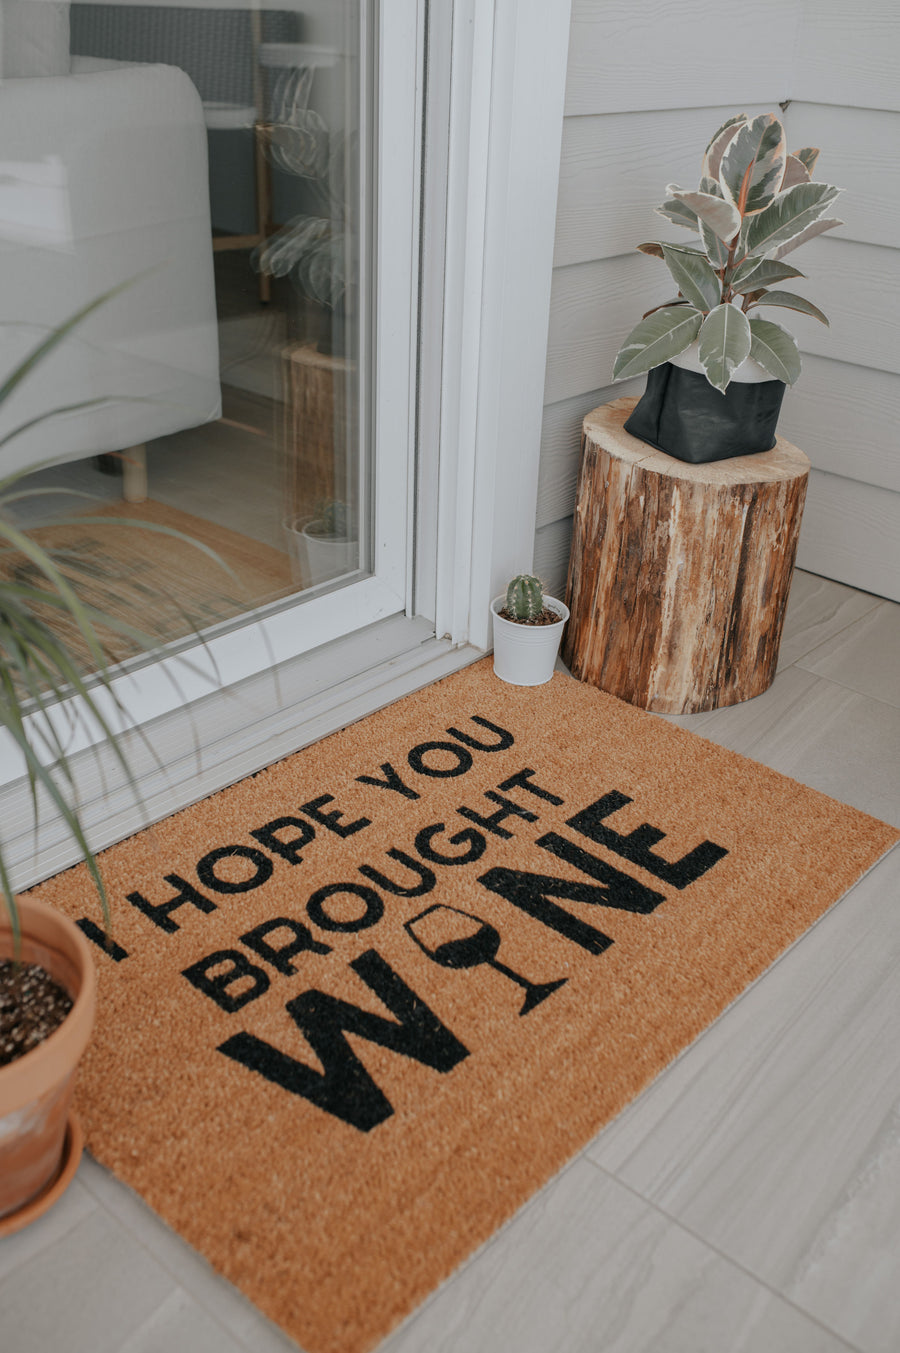 I Hope You Brought Wine | doormat